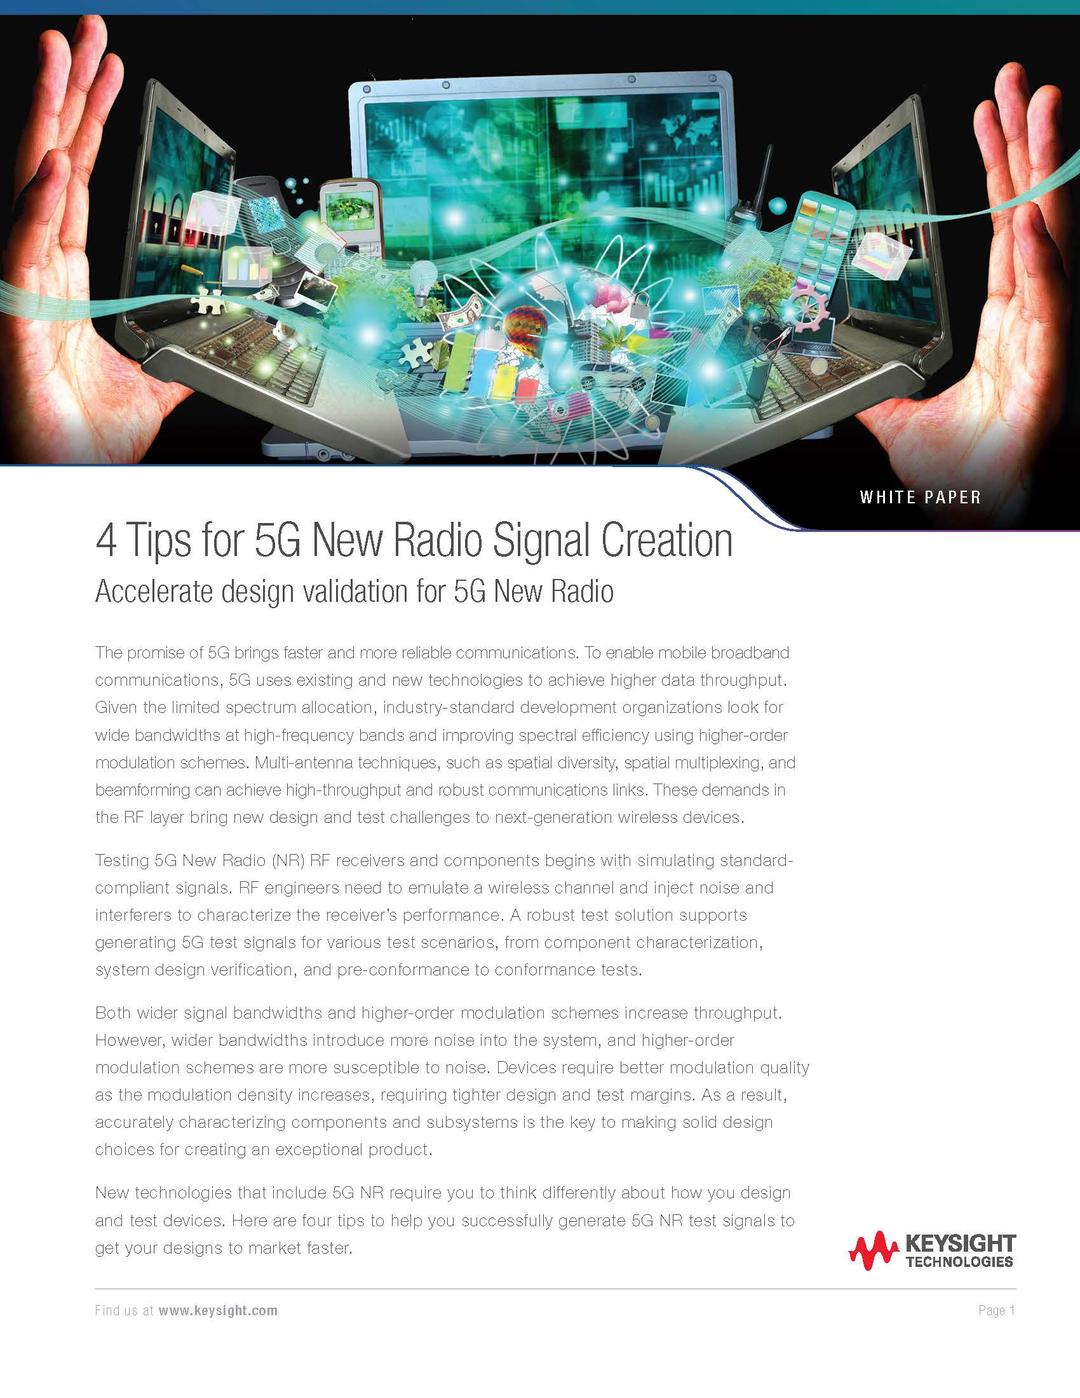 4 Tips for 5G New Radio Creation, imagen